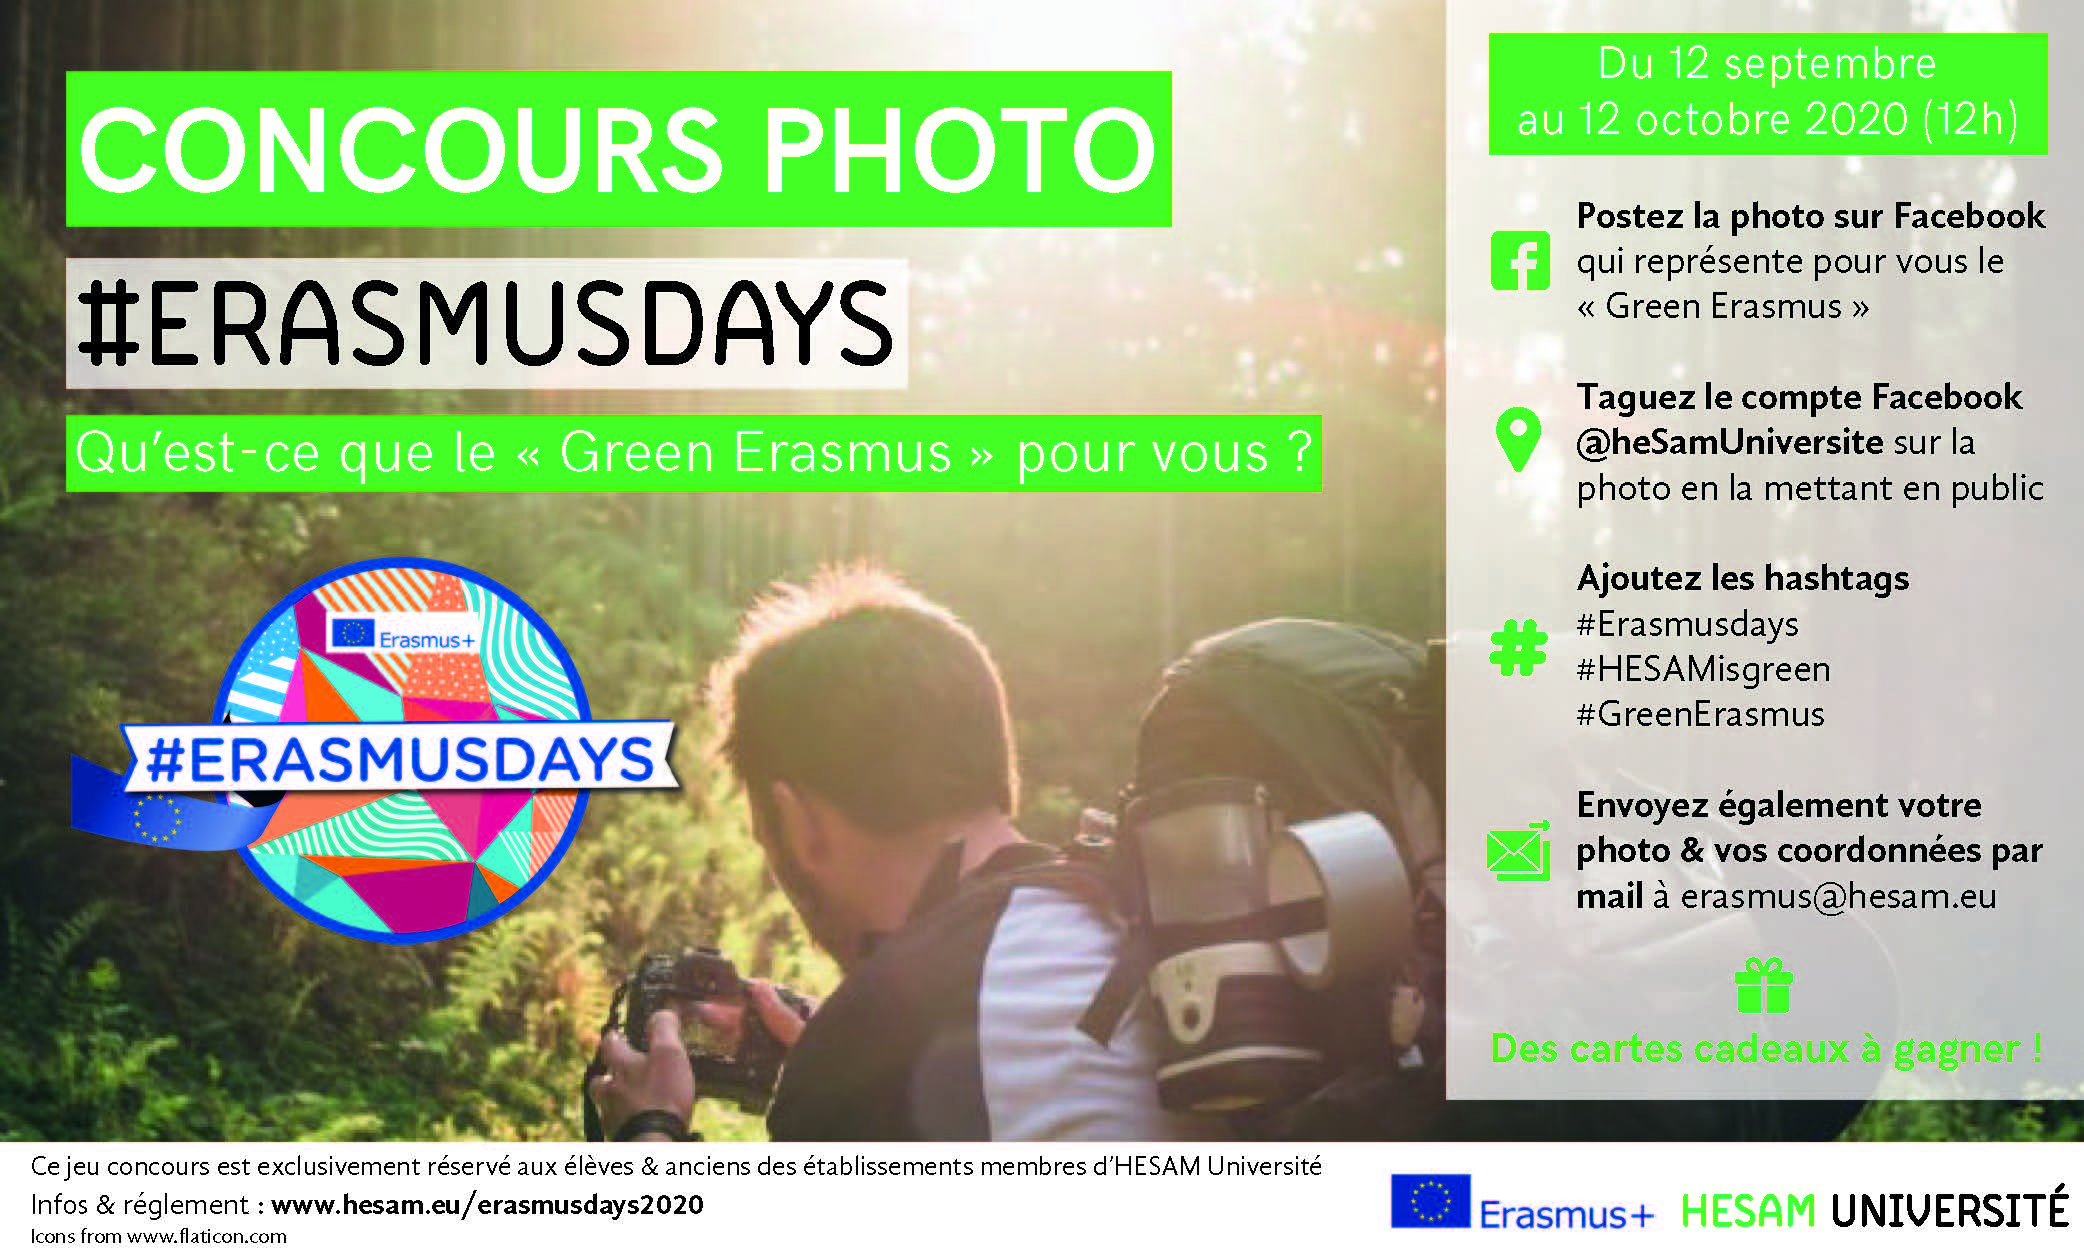 Erasmus Day 2020 photo contest